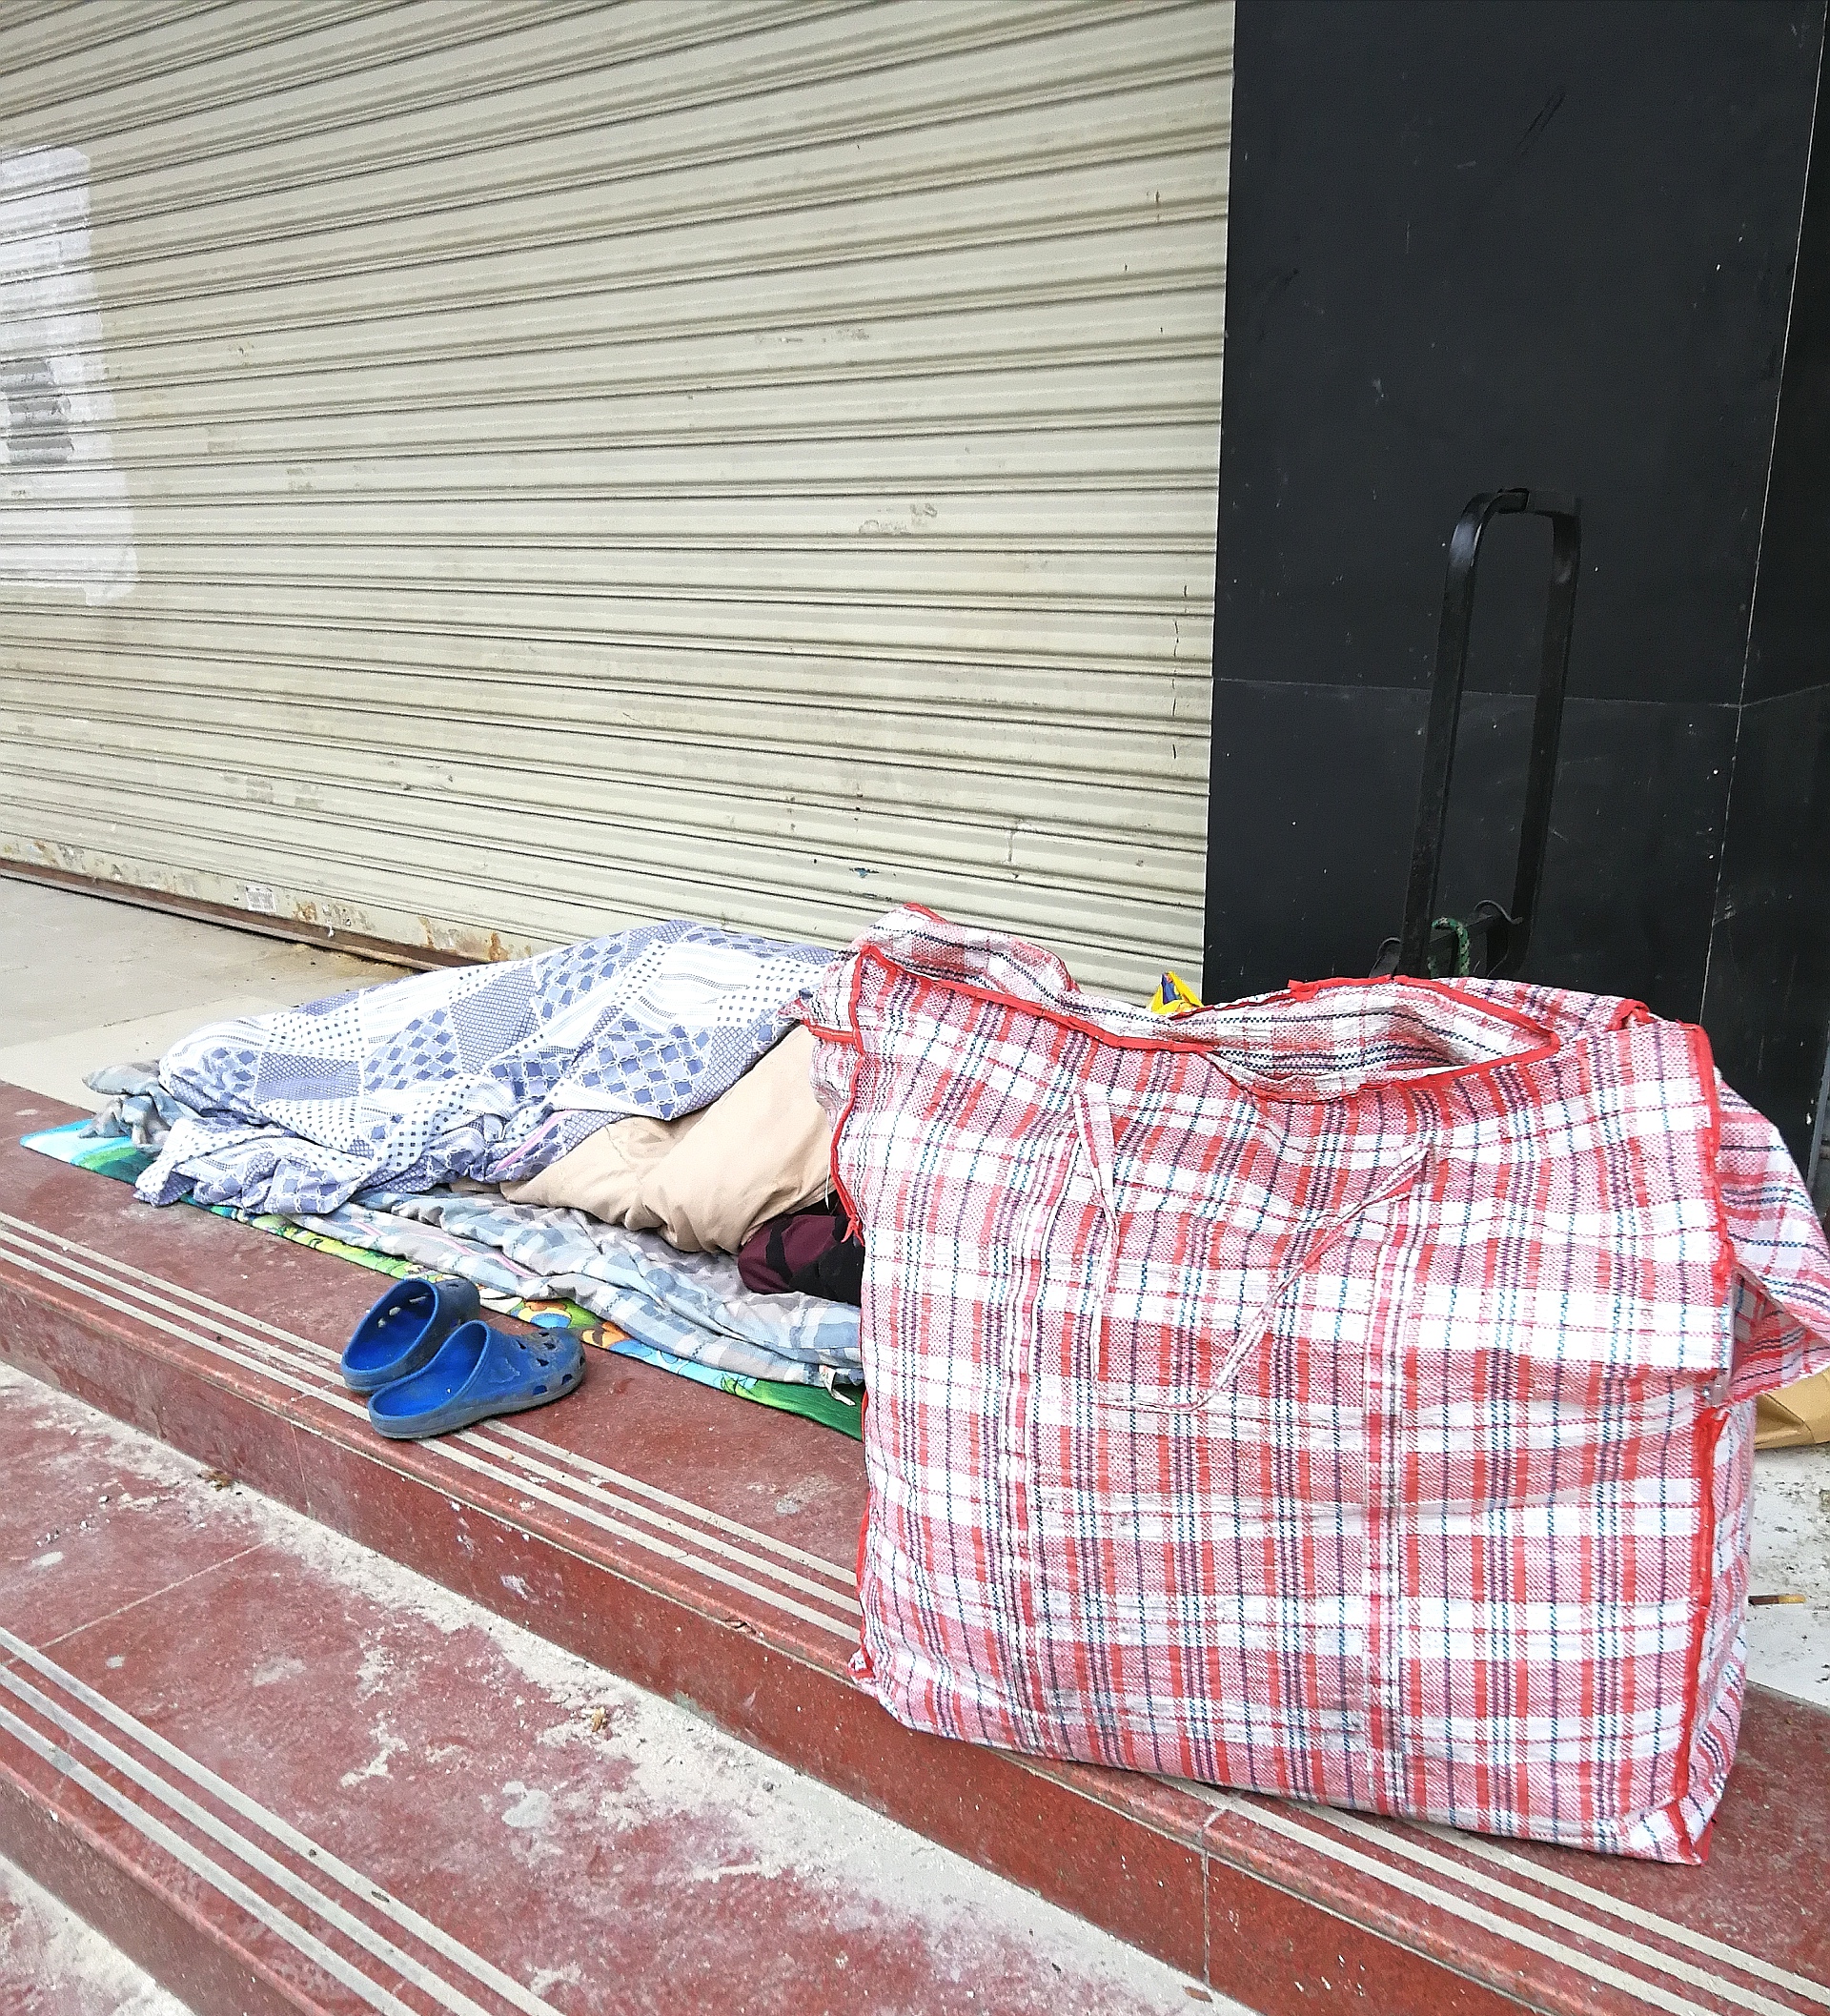 实拍:睡在深圳街头的一群流浪汉,他们的春节与众不同 别具一格